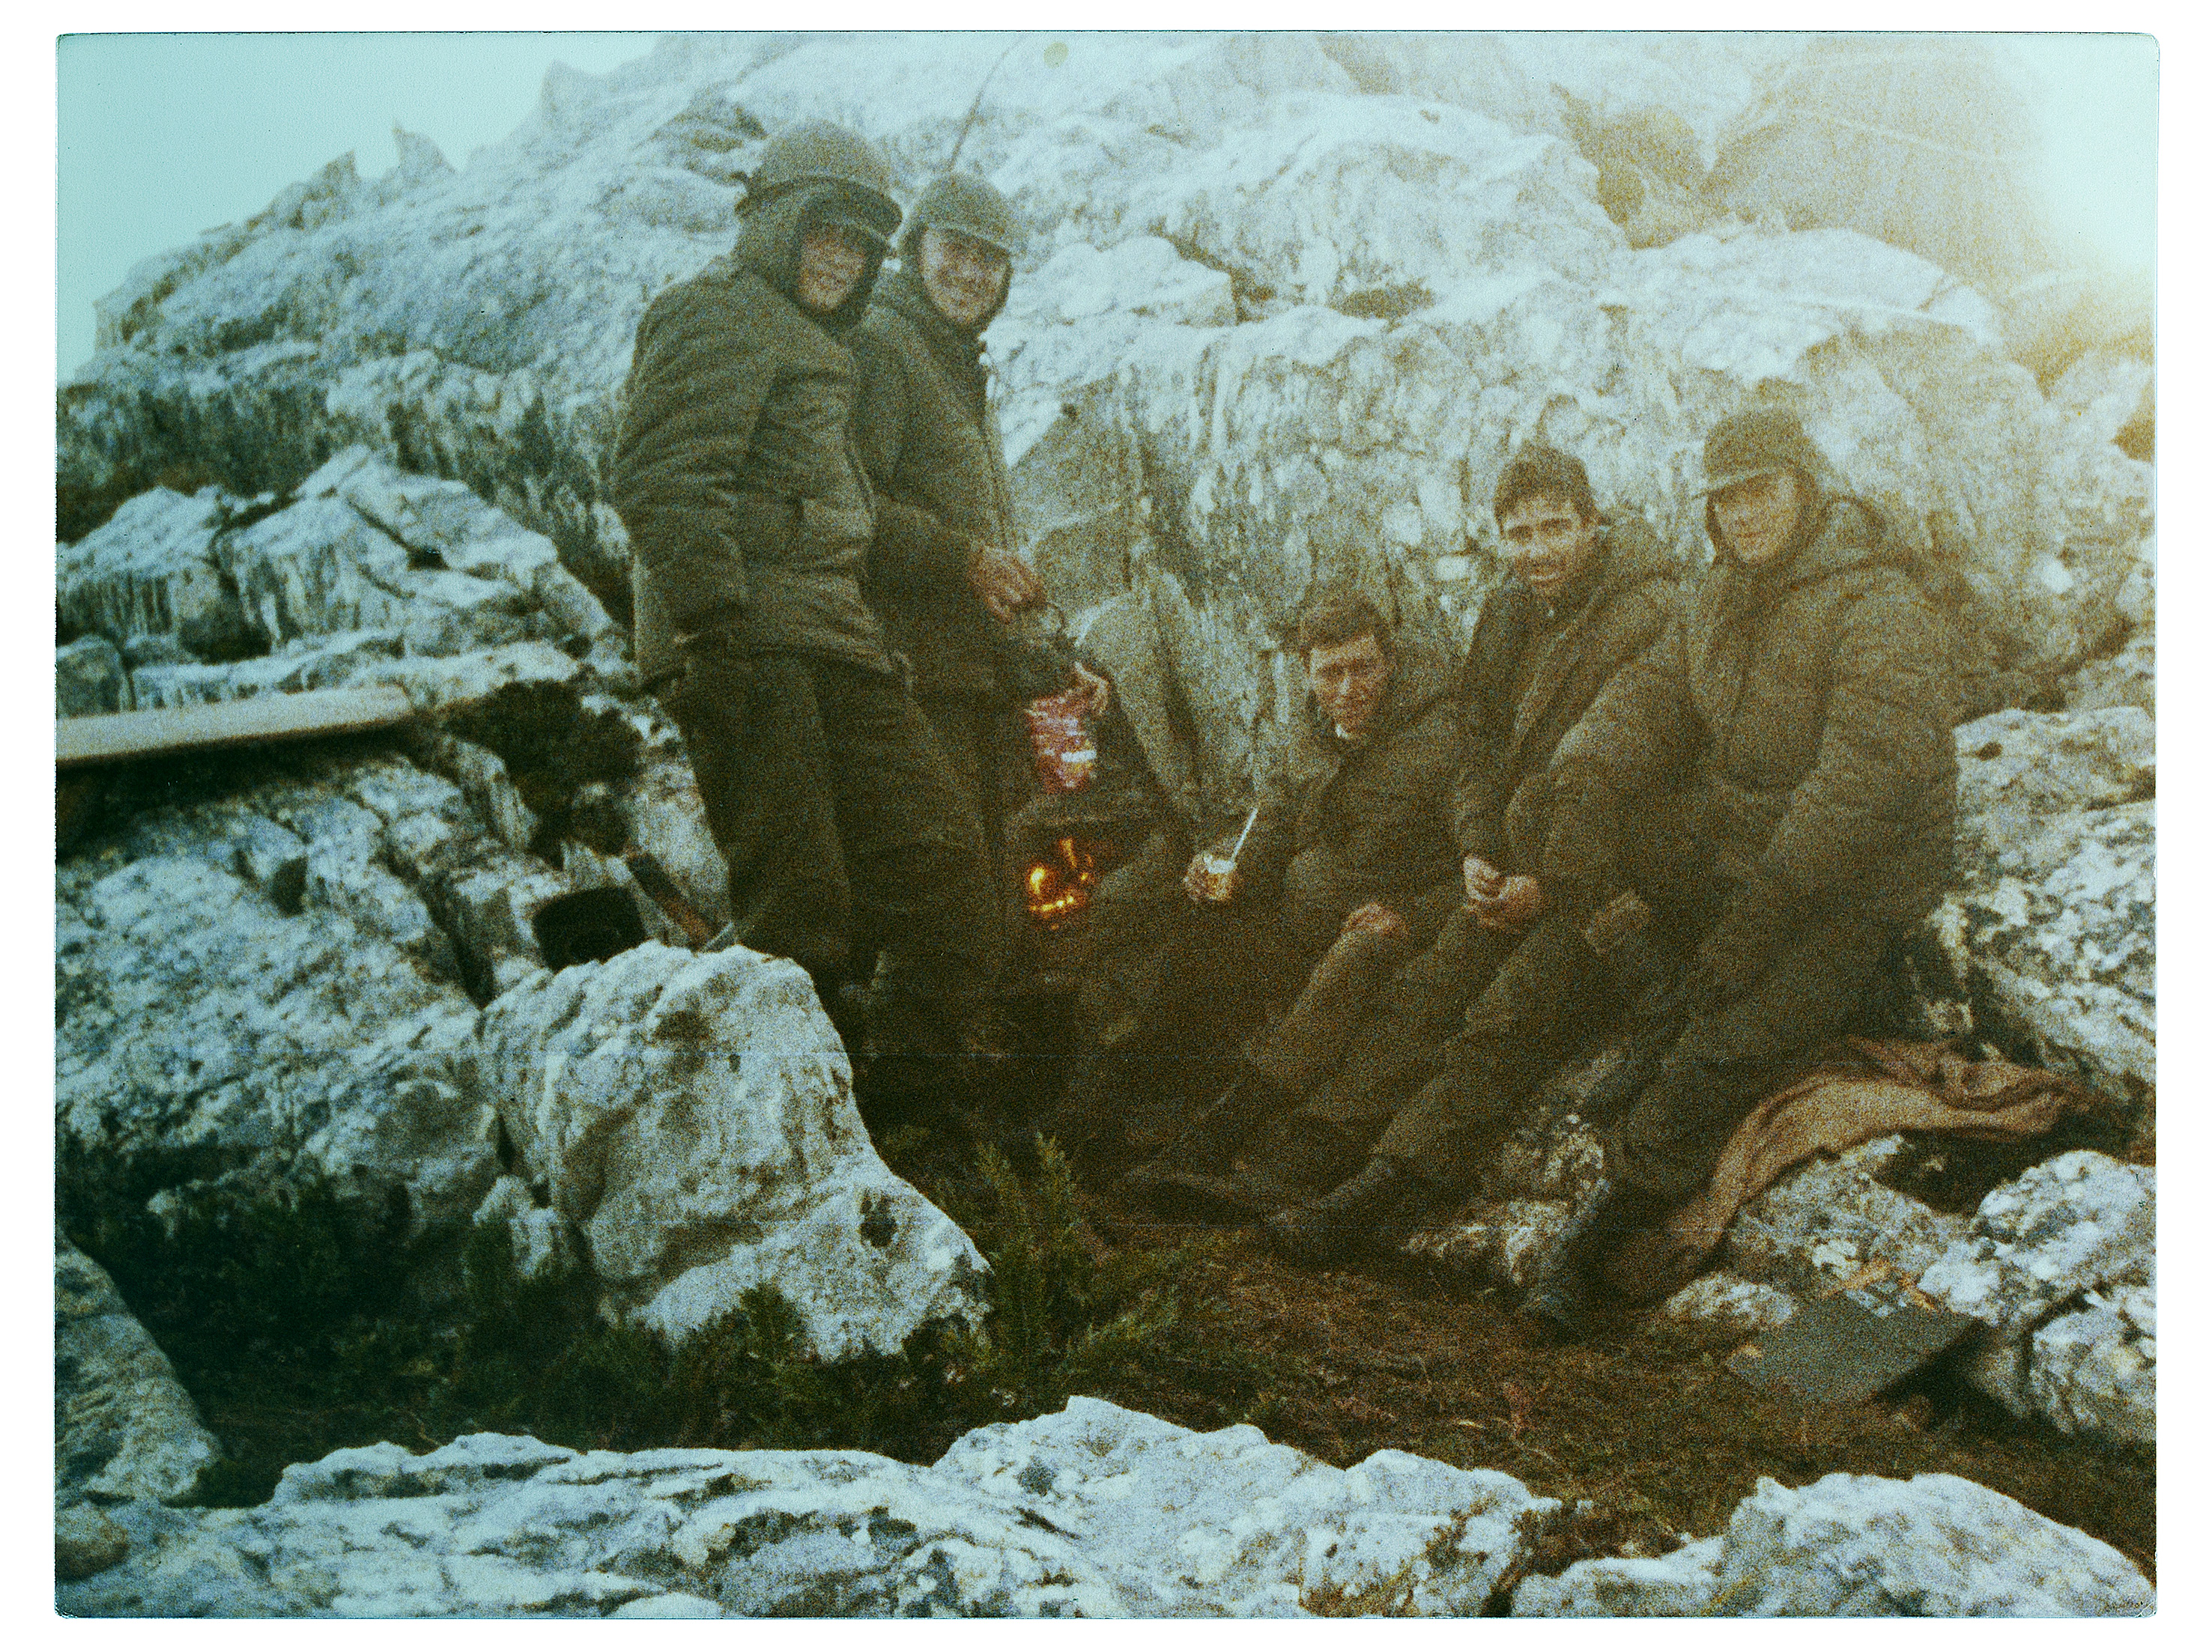 Soldados concriptos, el 2do desde la izquierda Arfouche, Rubén Pablos, josé Luis Mellana.
Wireless Ridge, Islas Malvinas, Argentina.
Abril de 1982. 